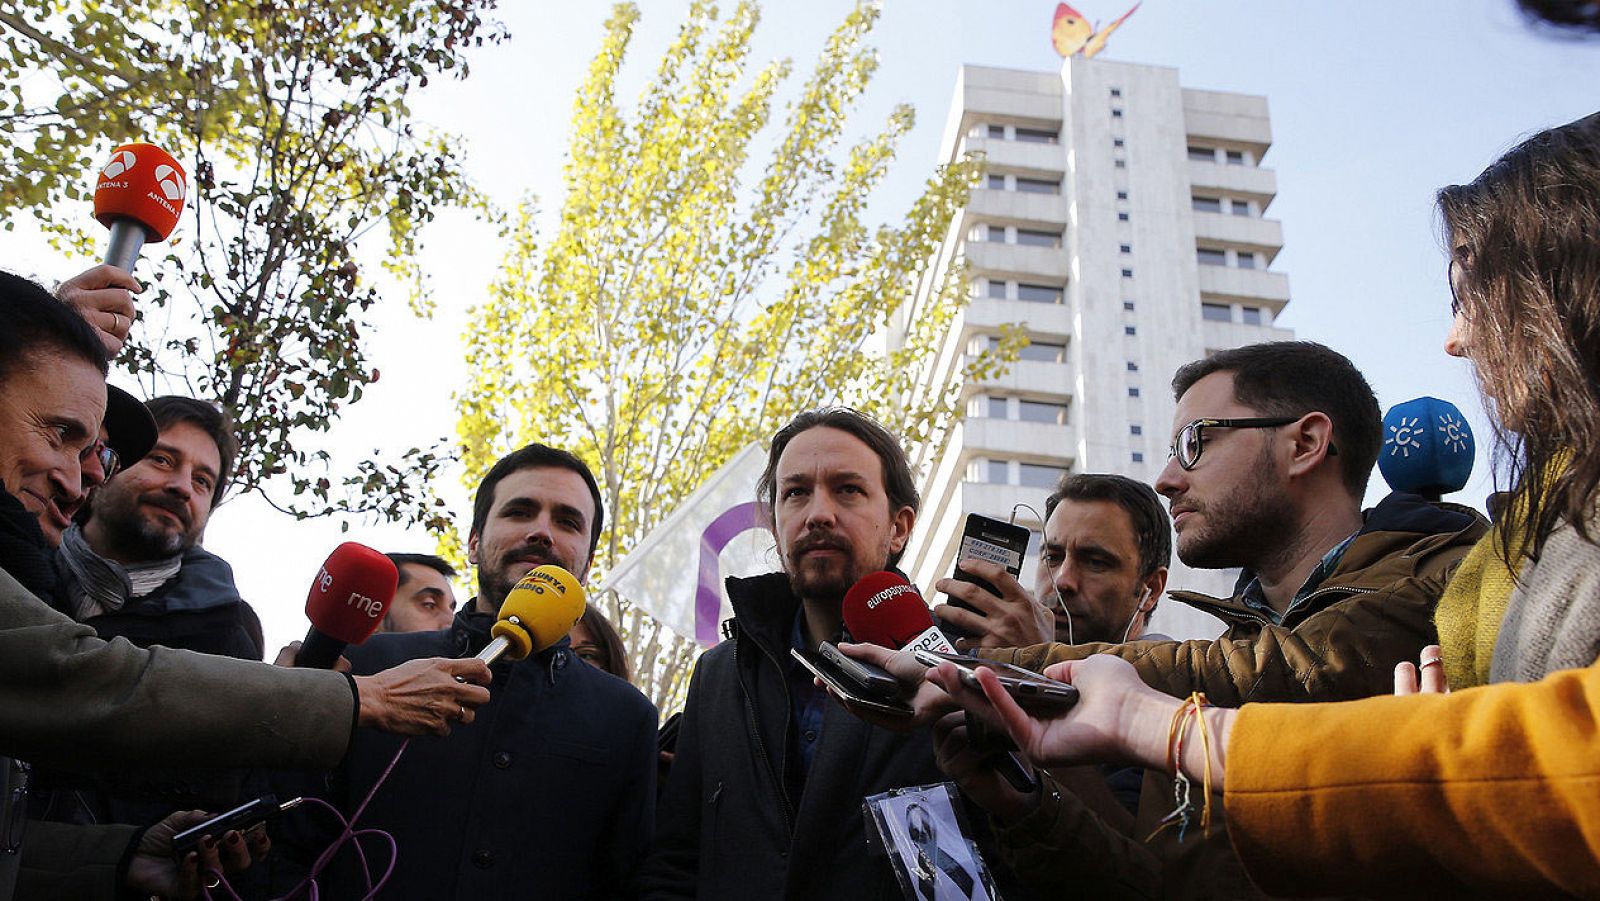 El secretario general de Podemos, Pablo Iglesias, y el coordinador federal de IU, Alberto Garzón, en la concentración frente a las oficinas de Gas Natural Fenosa en Madrid, el 19 de noviembre de 2016. Efe/Zipi